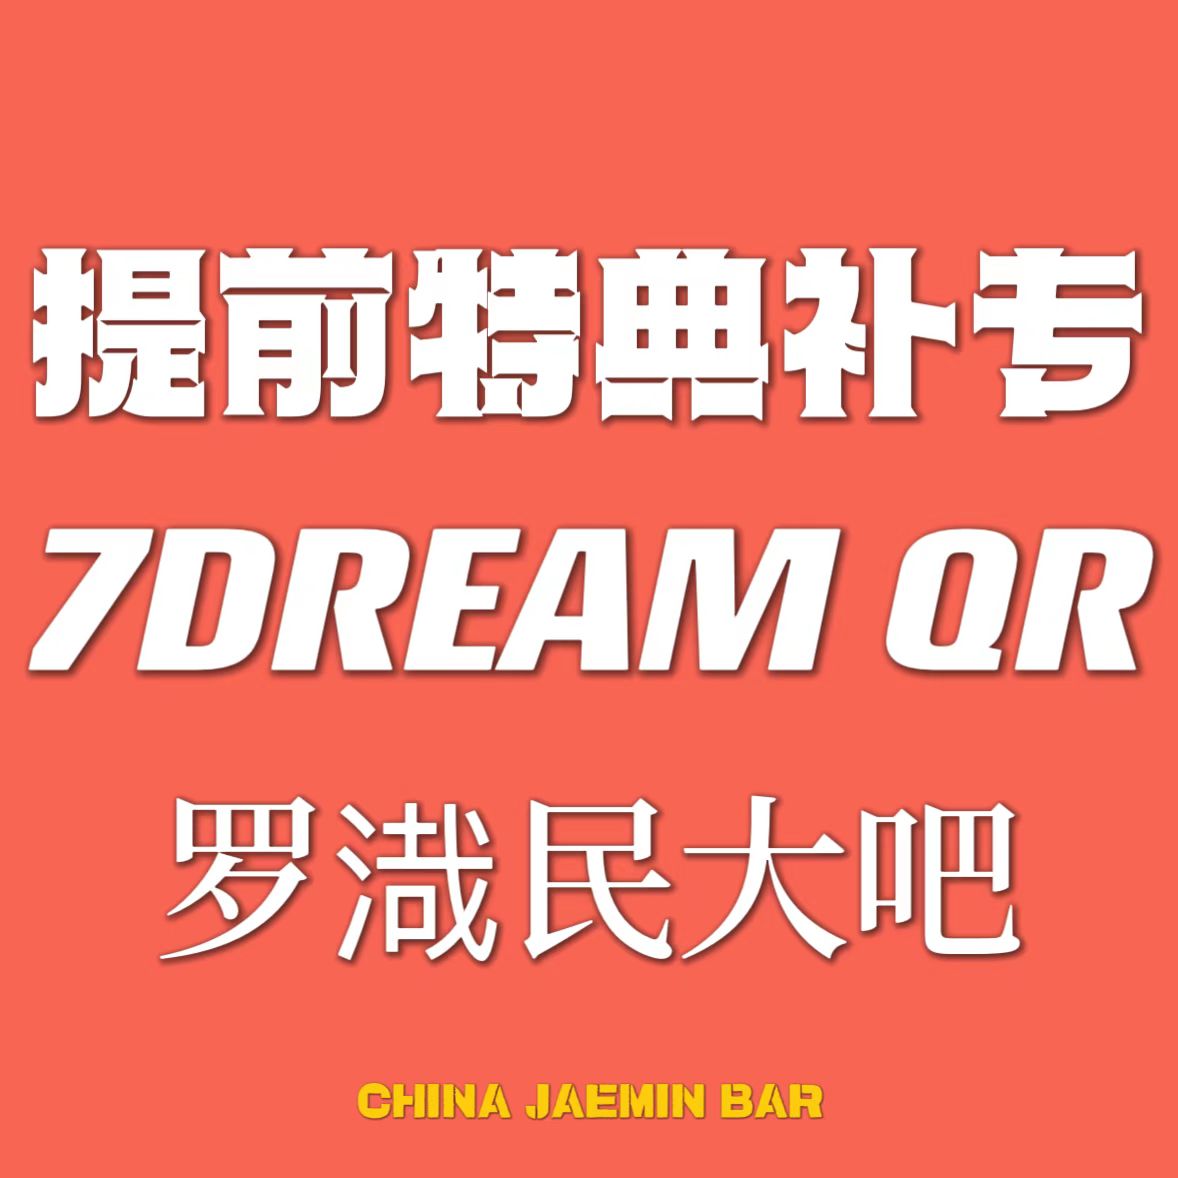 [全款 提前特典补专] NCT DREAM - 正规3辑 [ISTJ] (7DREAM QR Ver.) (Smart Album) (随机版本)_罗渽民吧